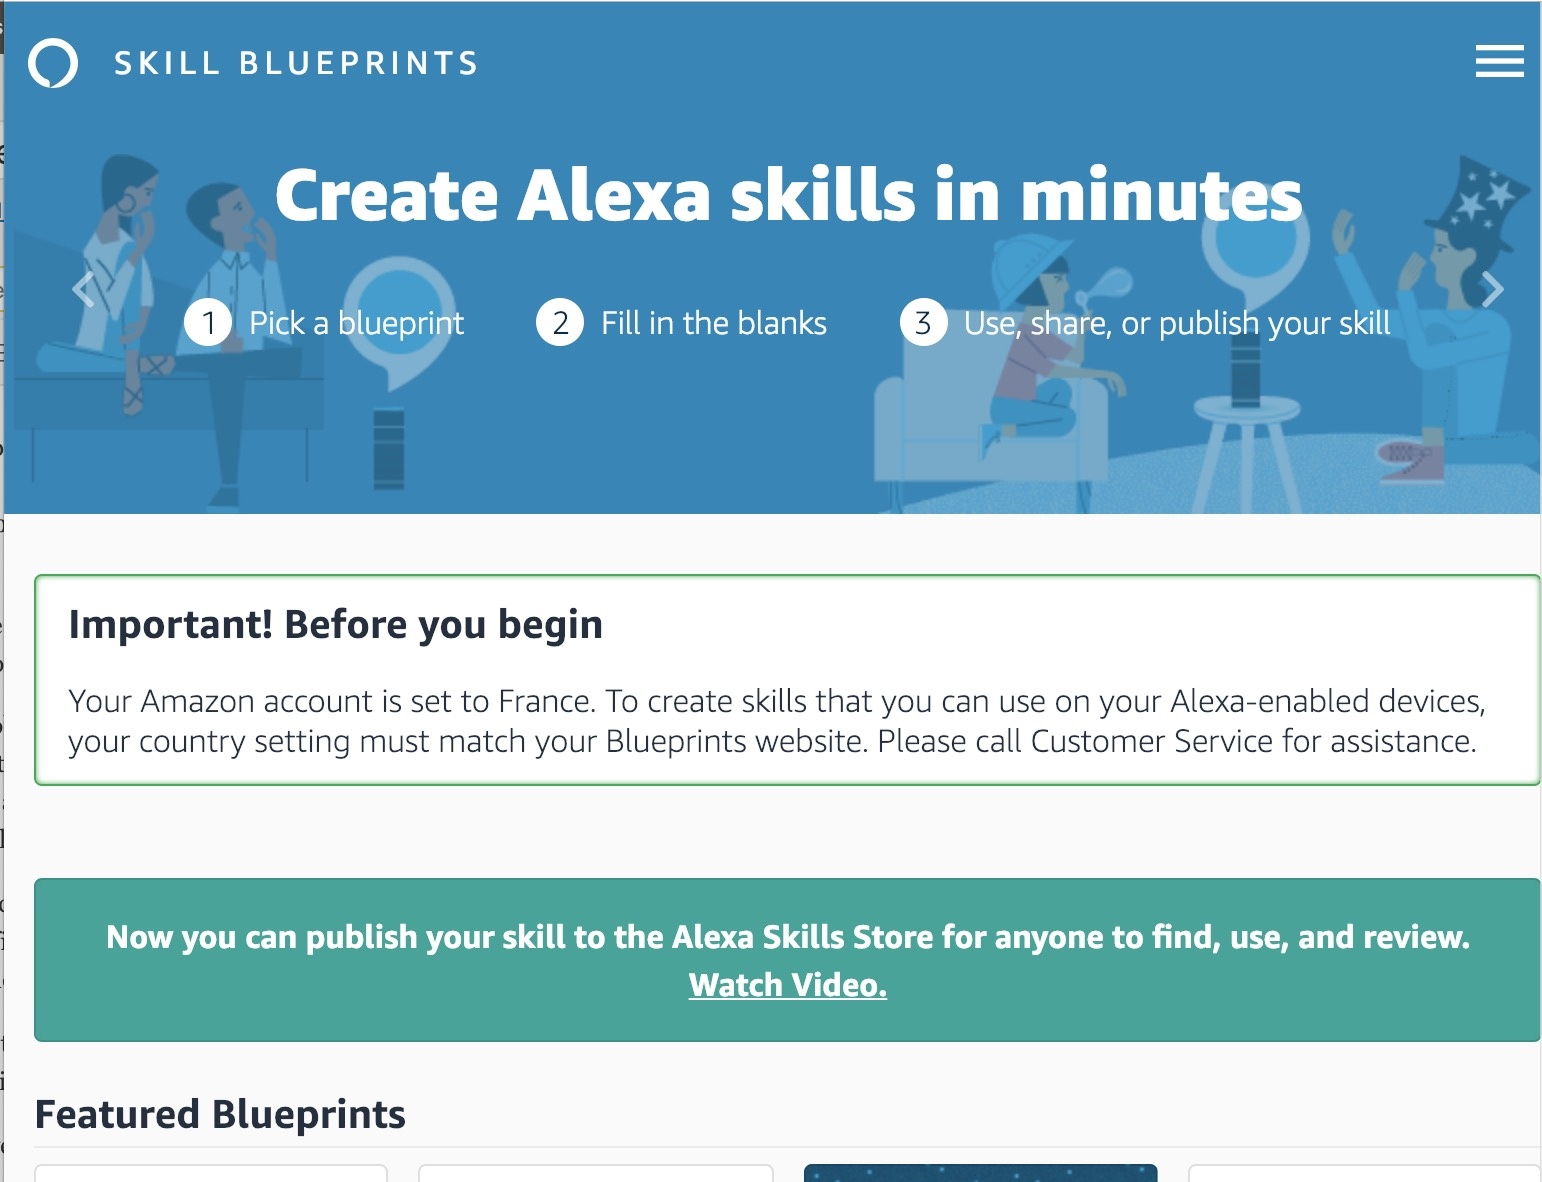 utilisateurs amazon peuvent desormais publier leurs propres skills alexa 1